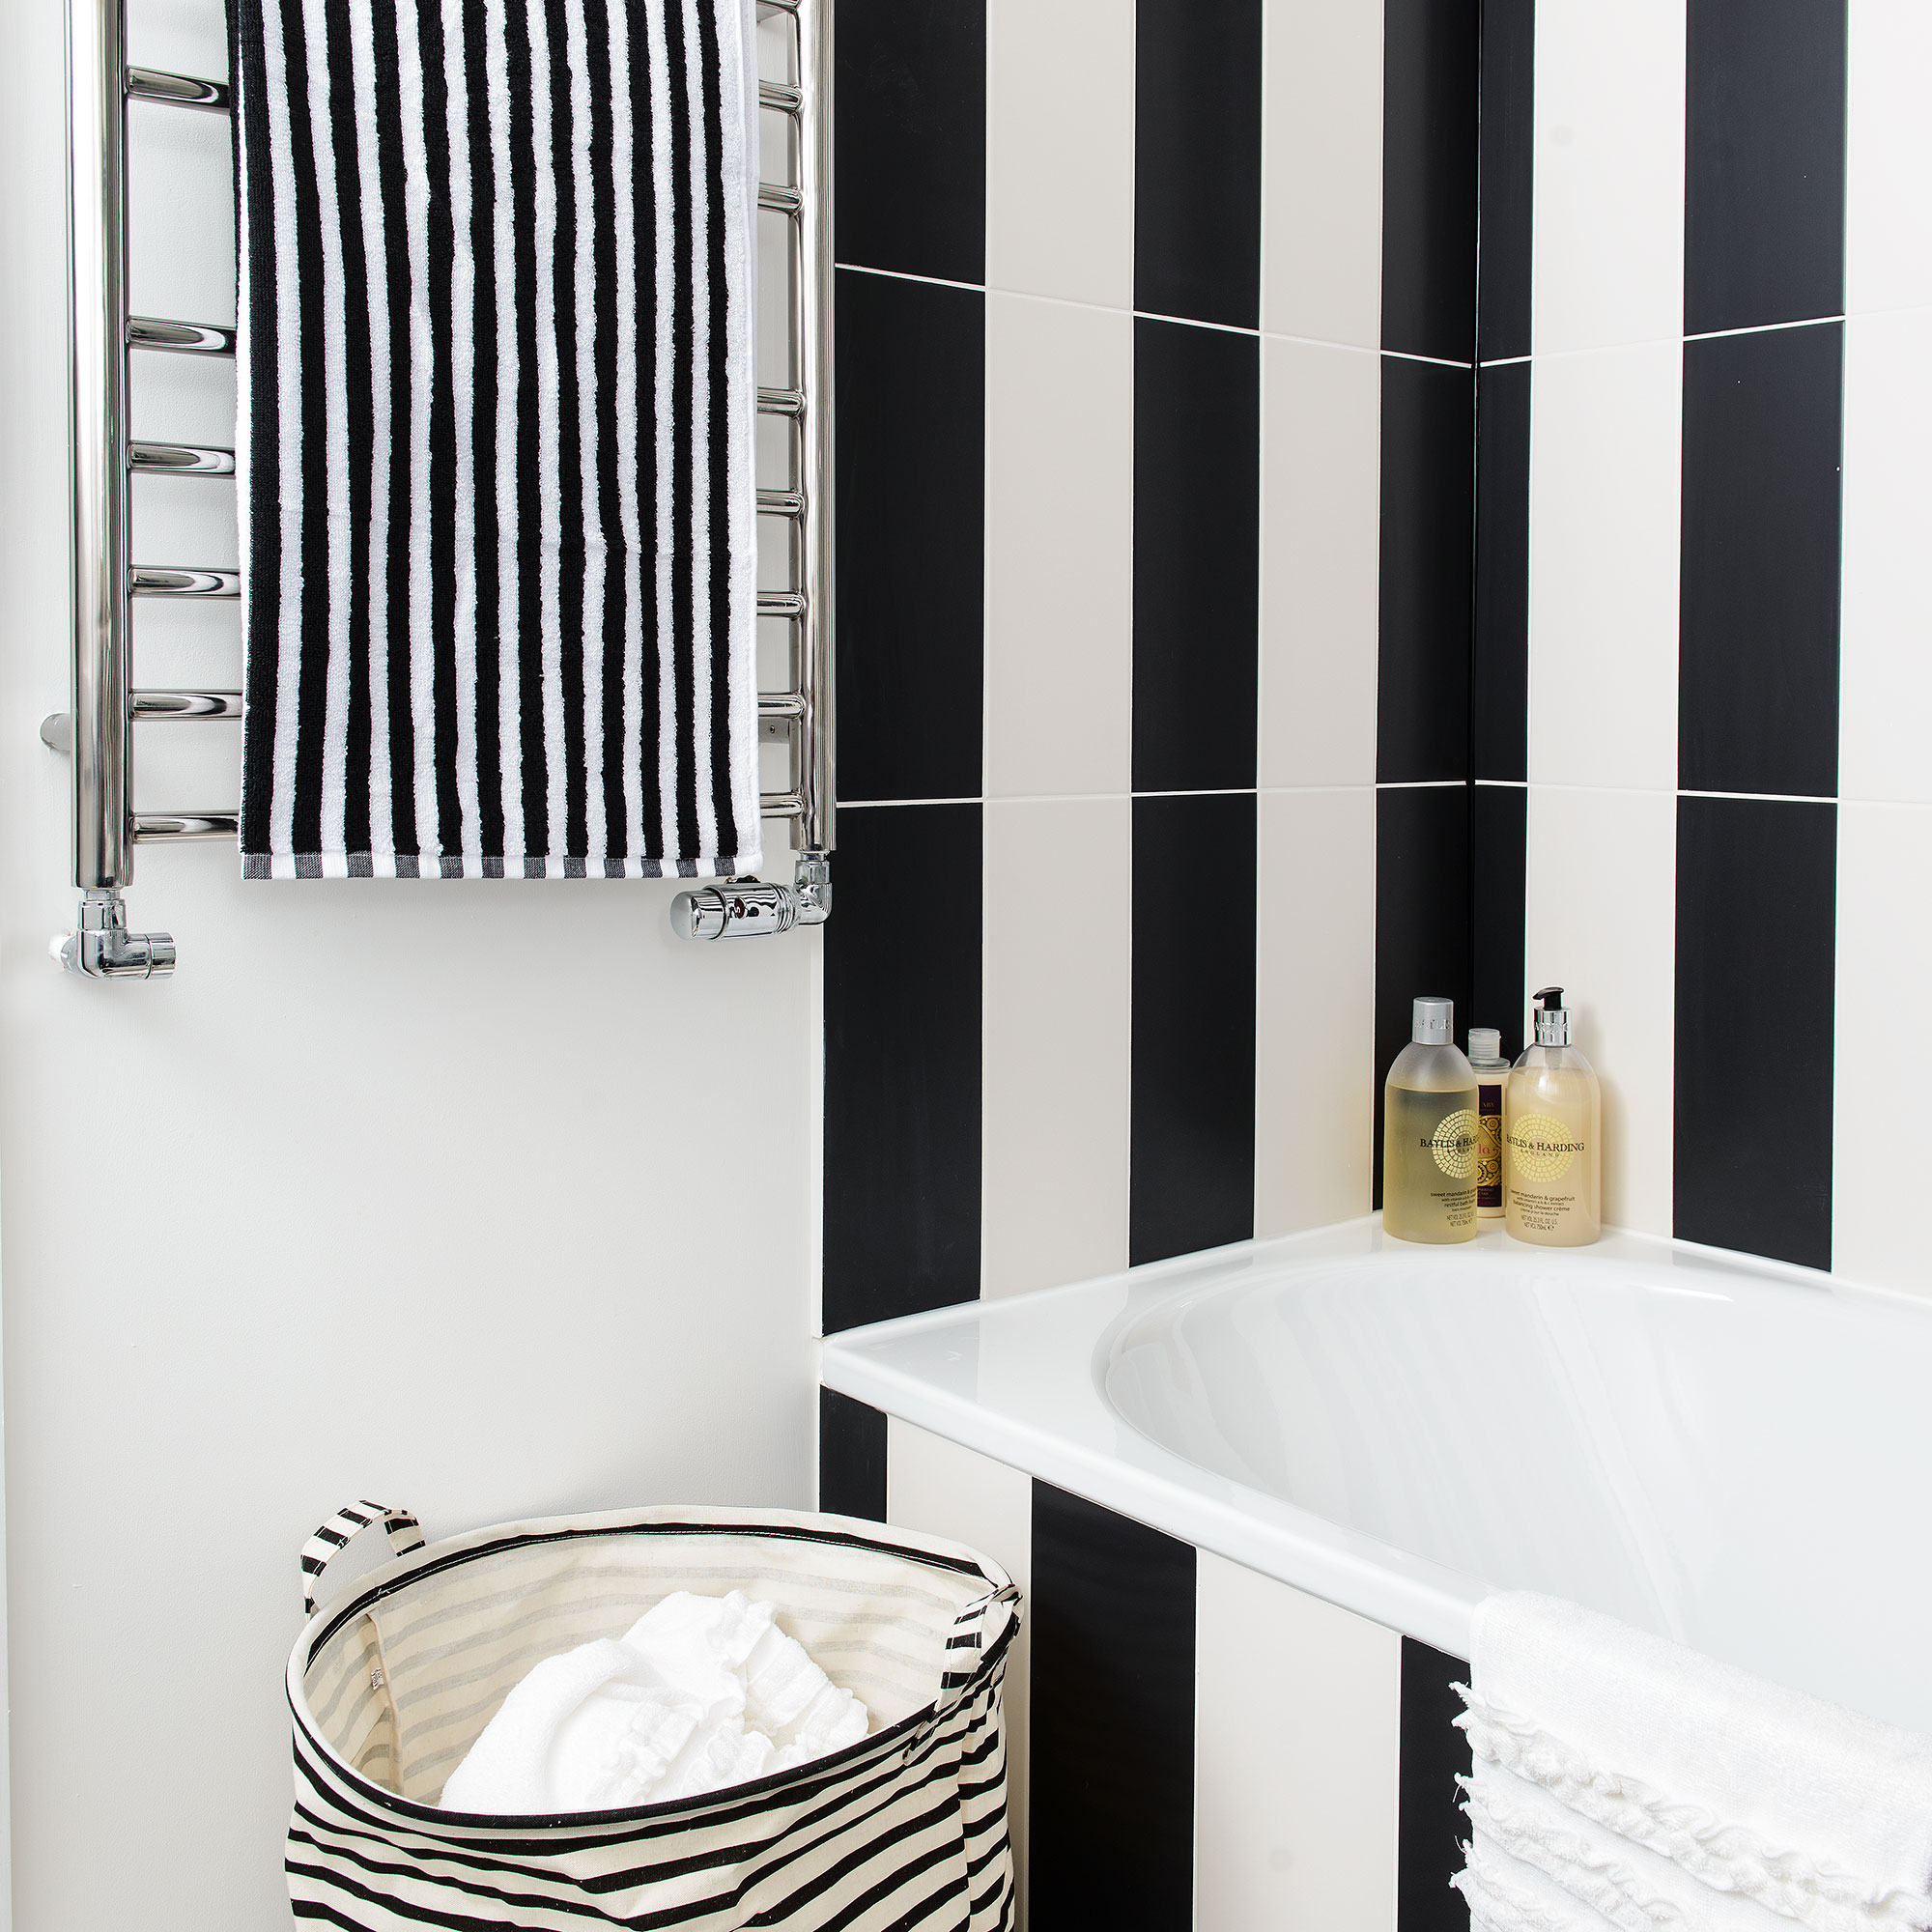 Kamar mandi dengan garis-garis ubin hitam dan putih vertikal